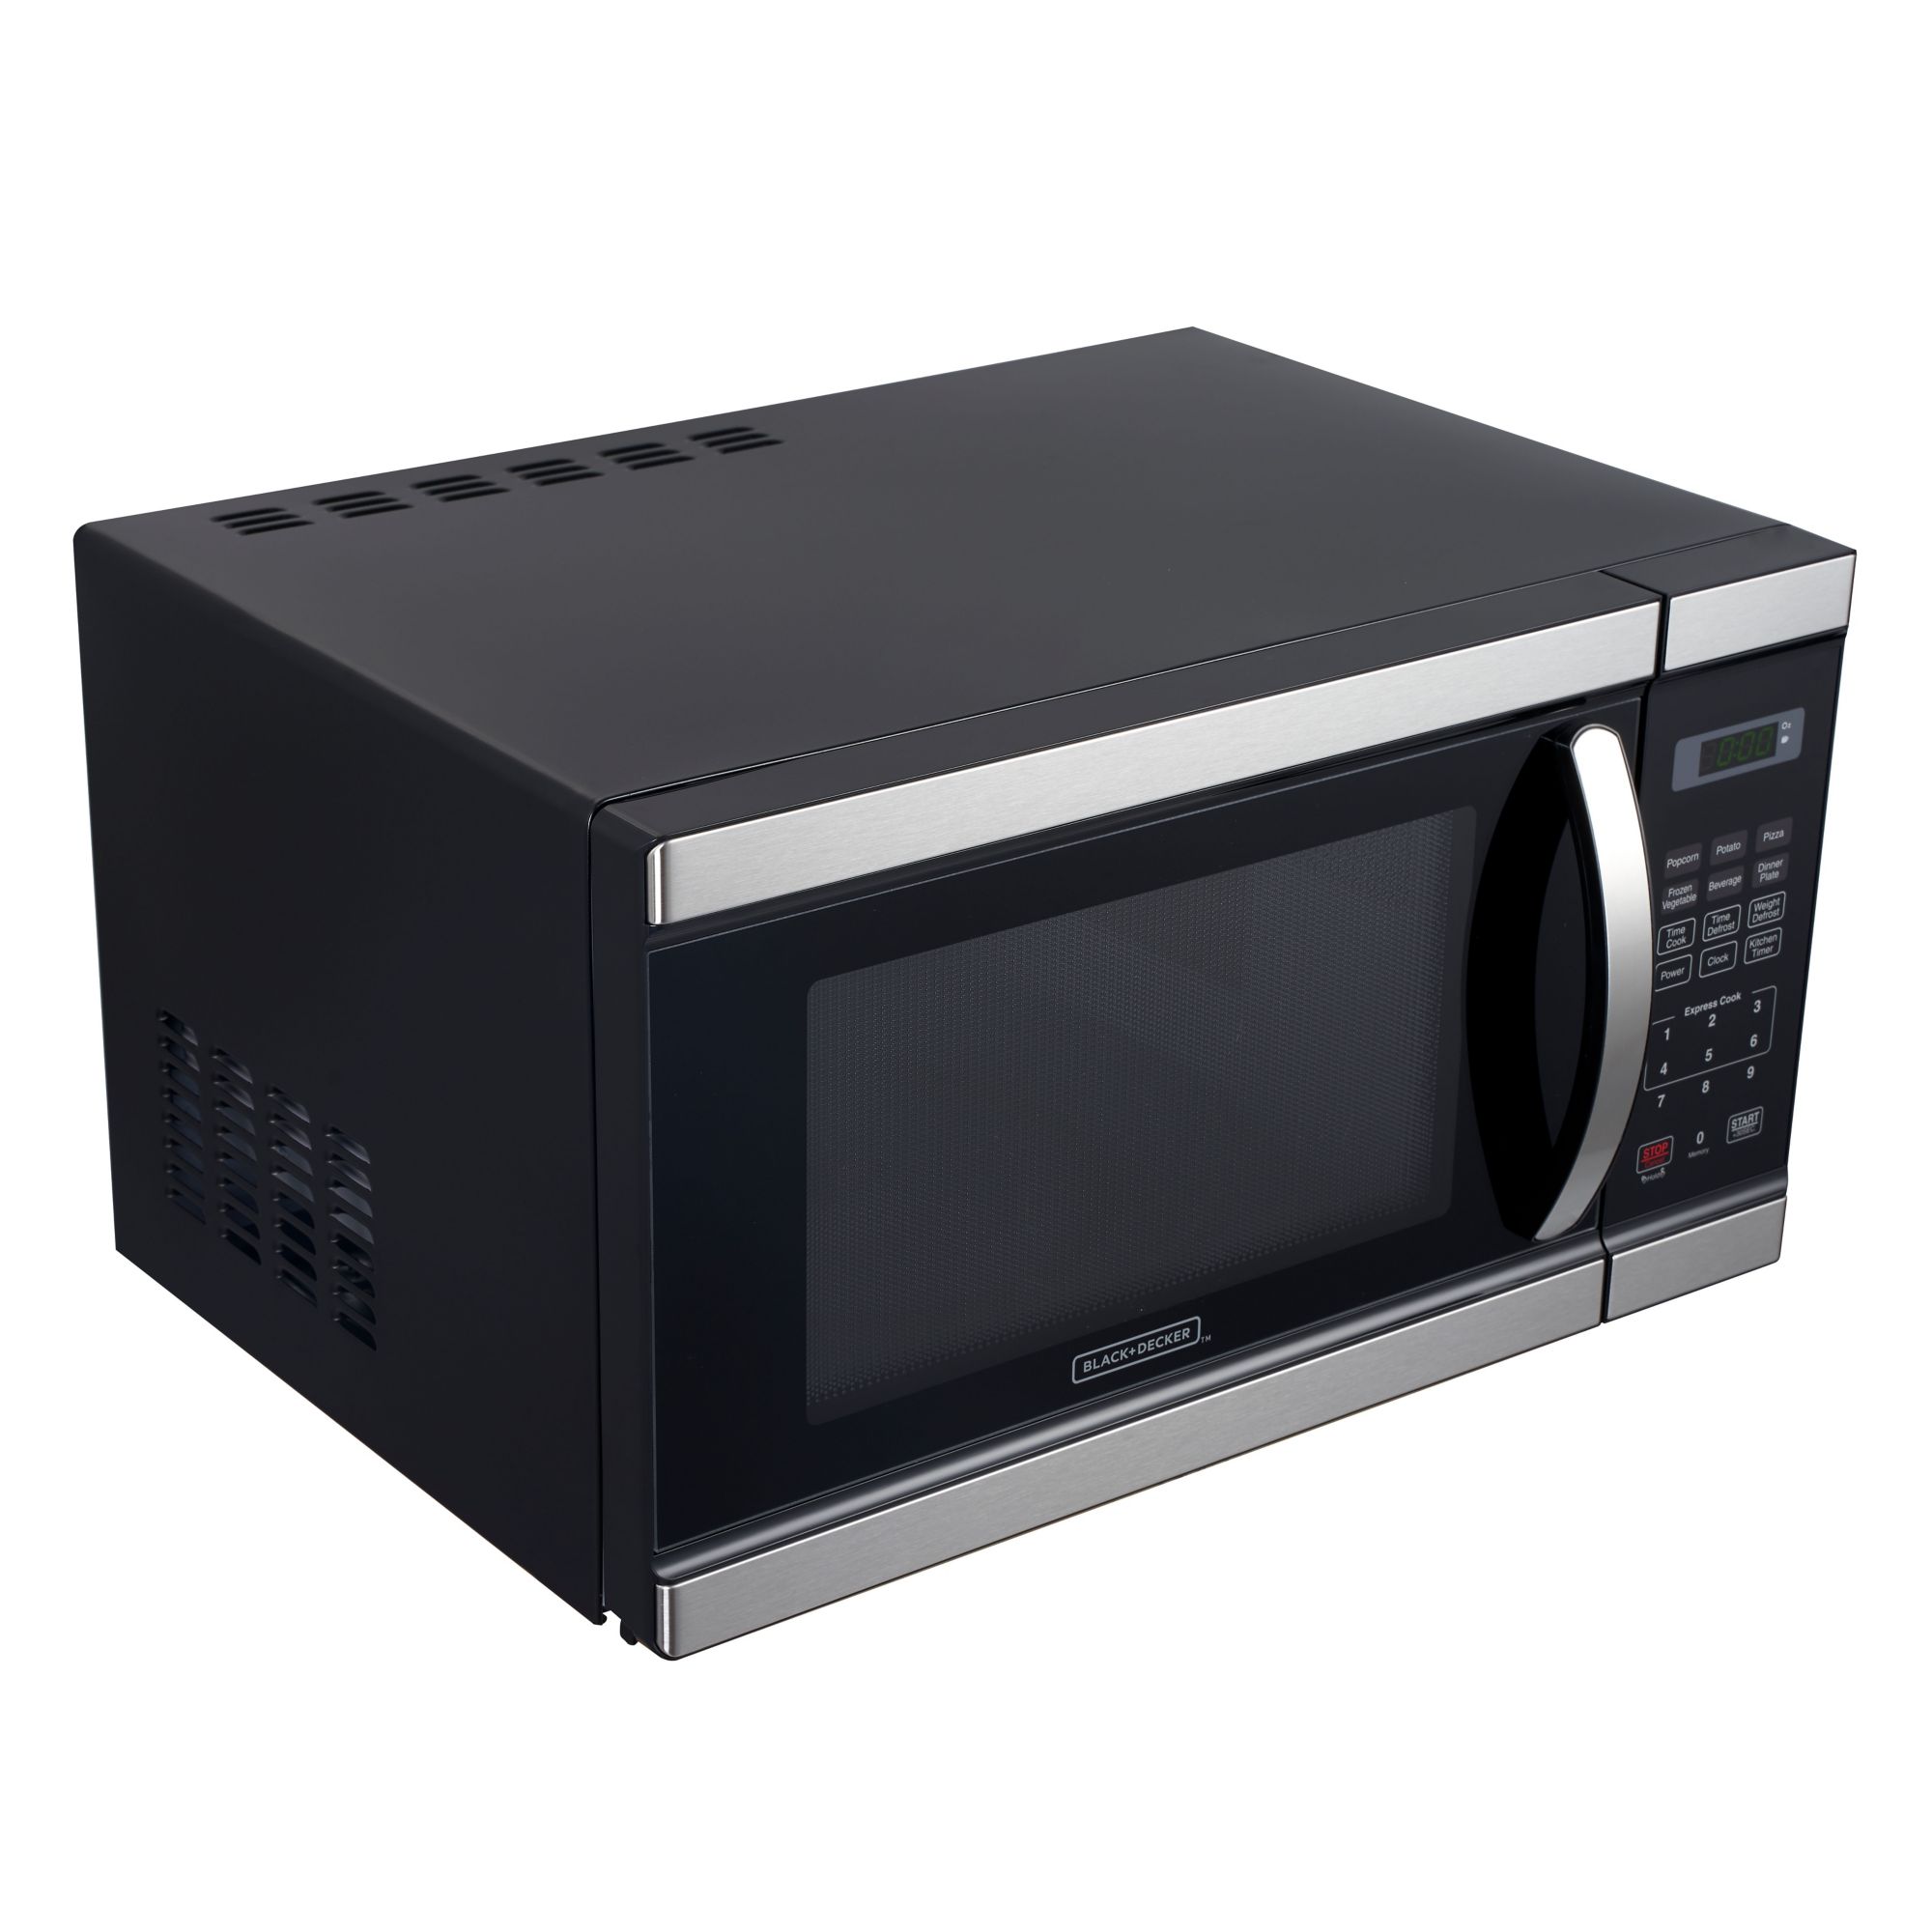 Microwaves  BLACK+DECKER